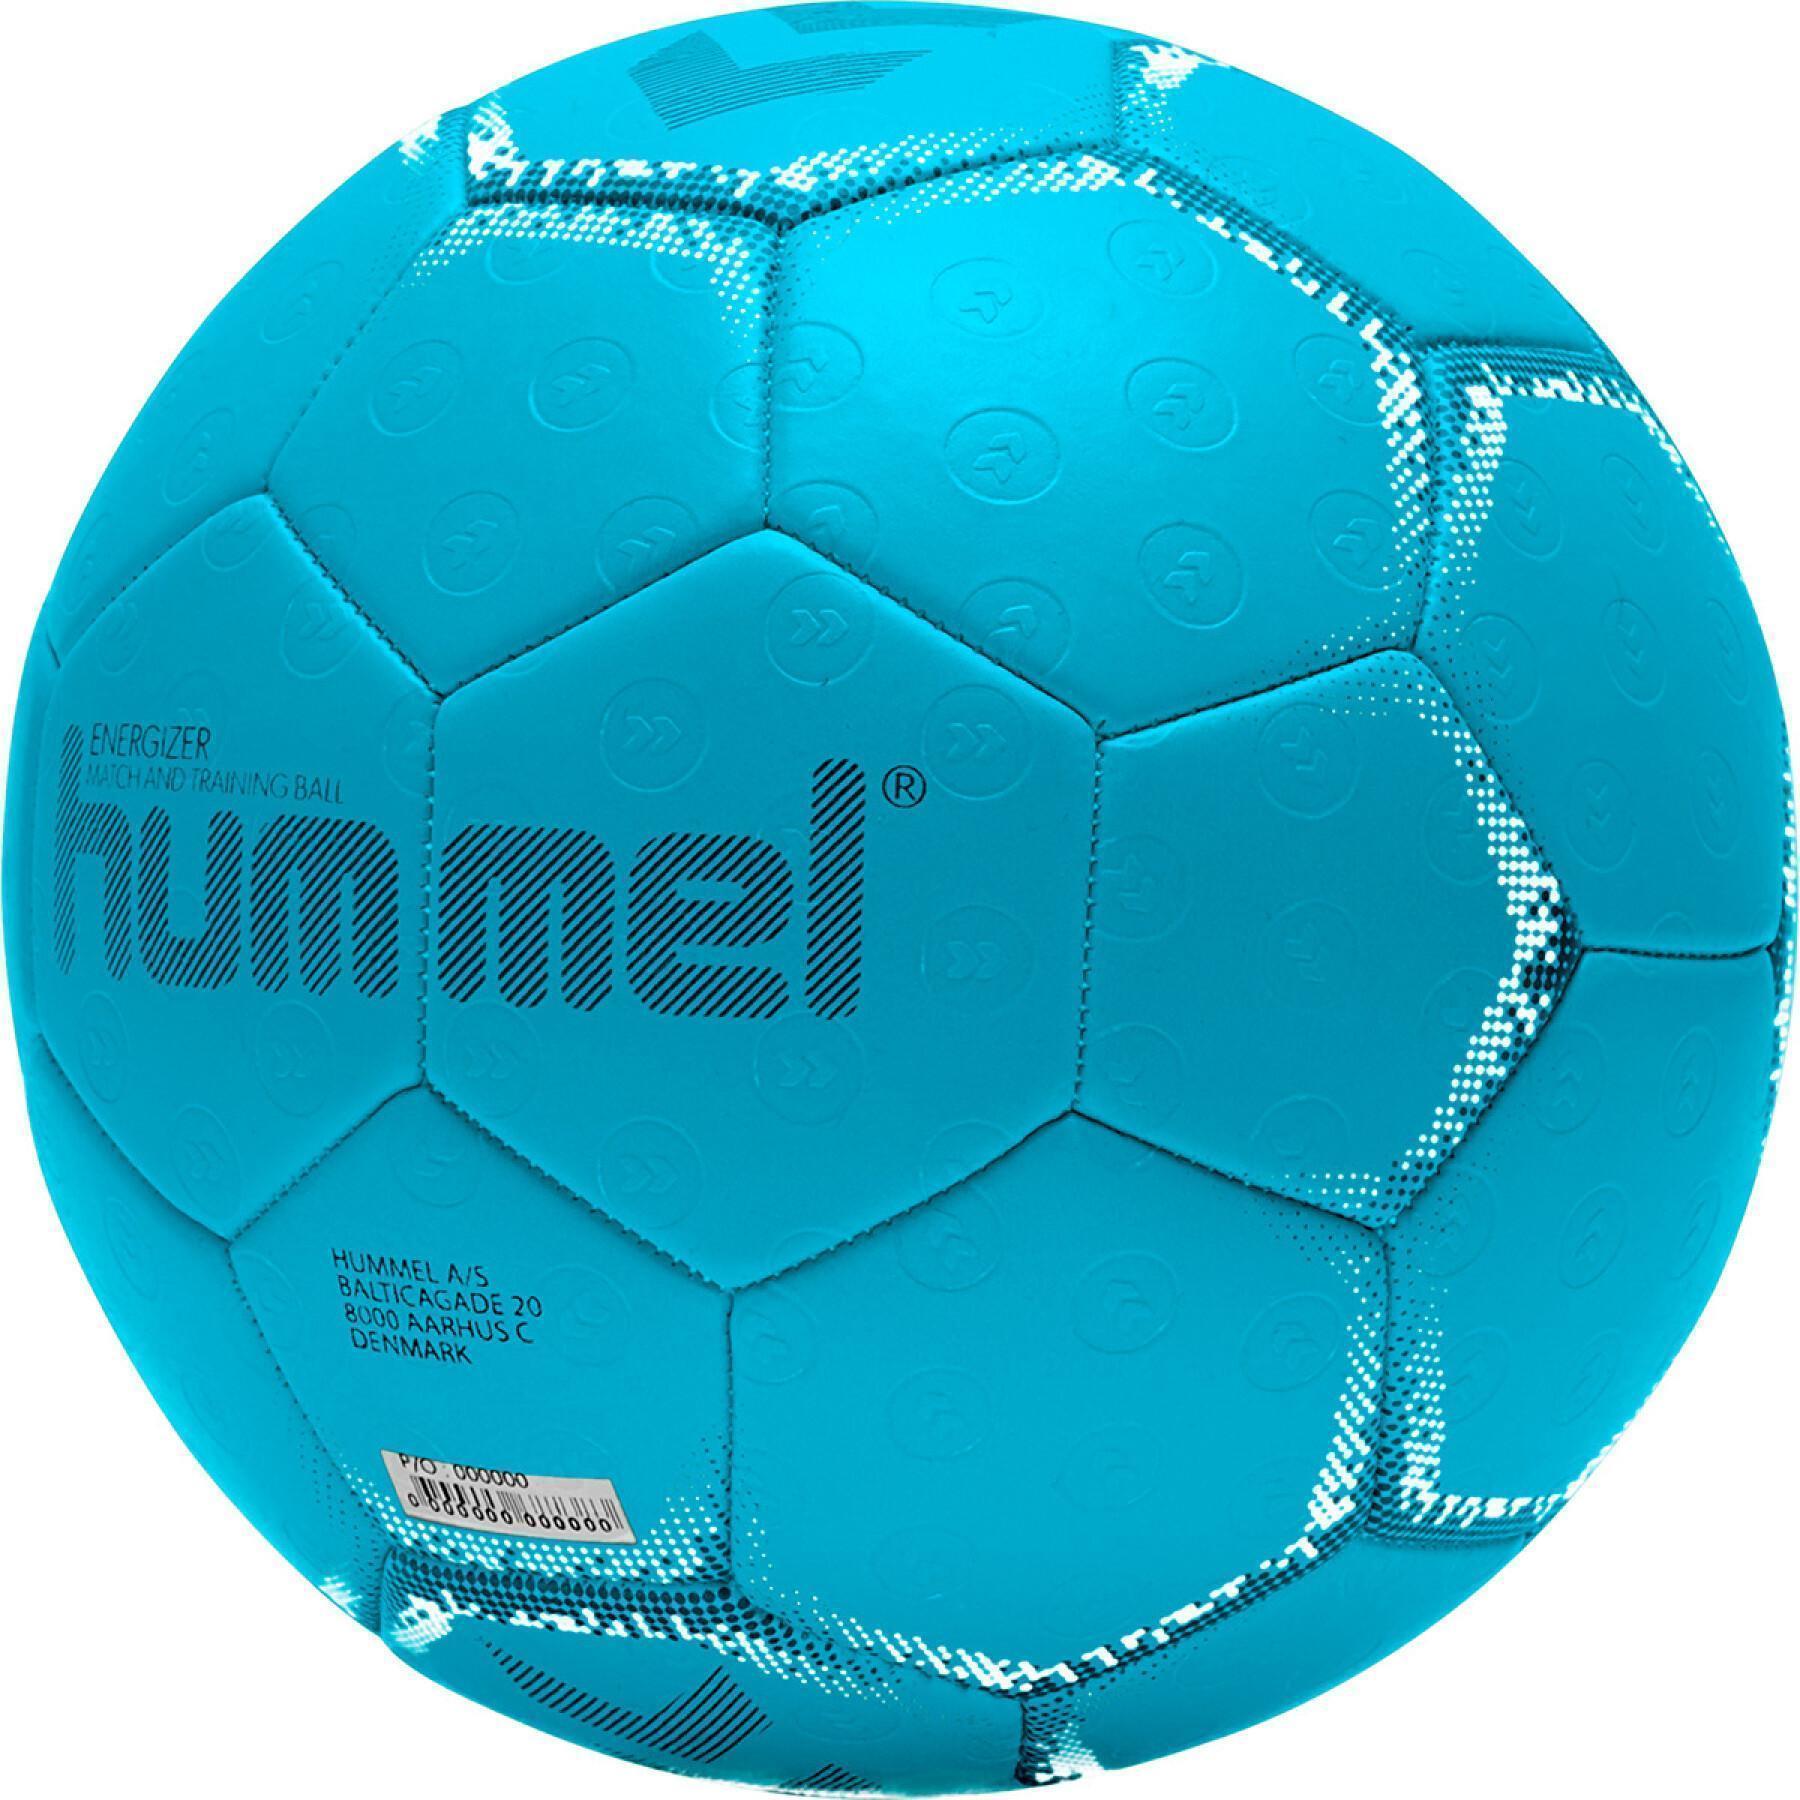 Handball - Energizer hb - Hummel Handballs Brands - Hummel